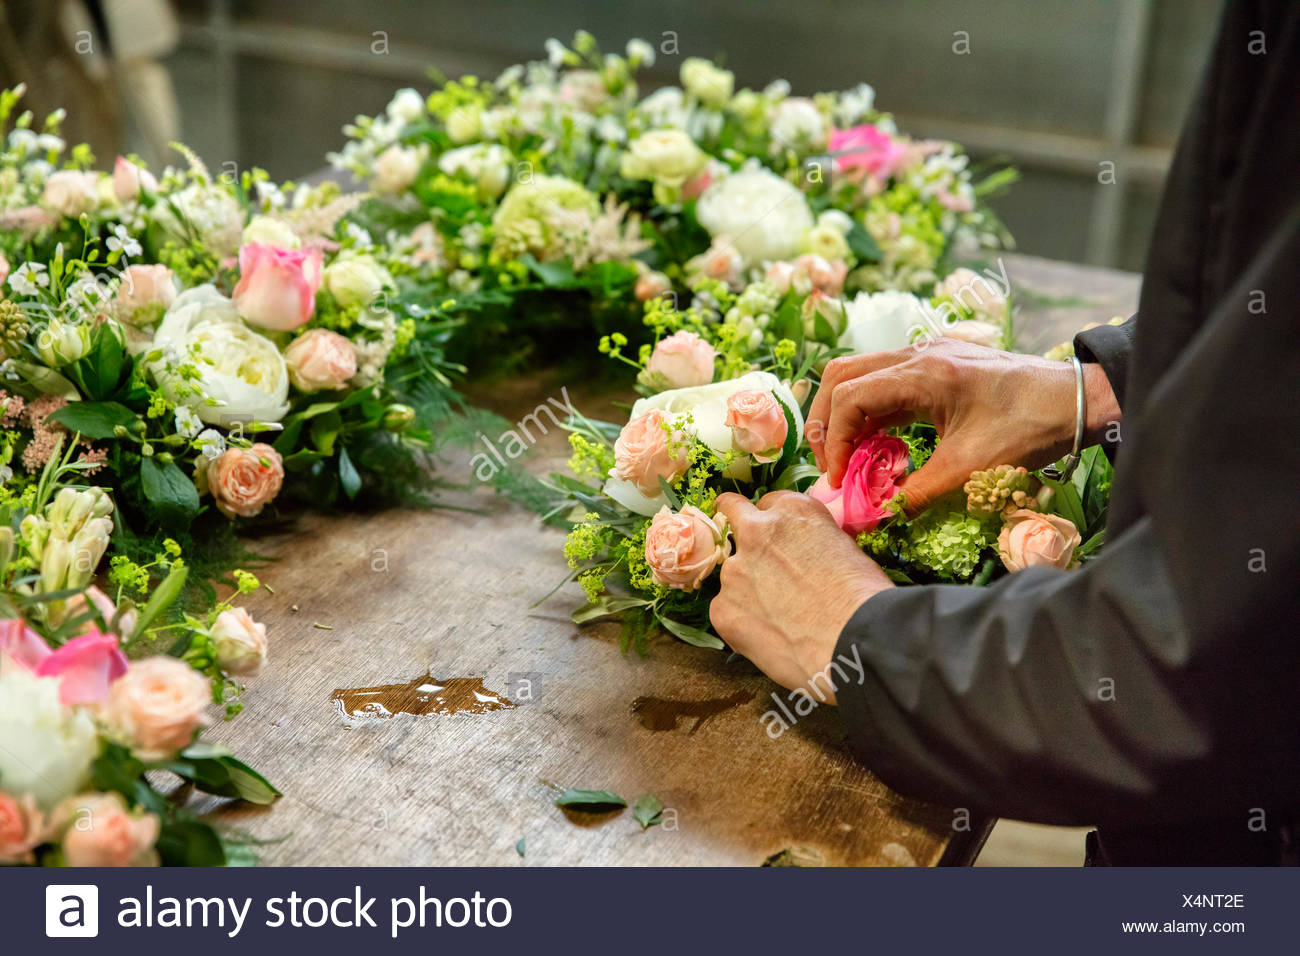 Kommerzielle Blumenbinden Ein Blumengeschaft Eine Frau Arbeitet An Einem Blumenschmuck An Einer Werkbank Stockfotografie Alamy